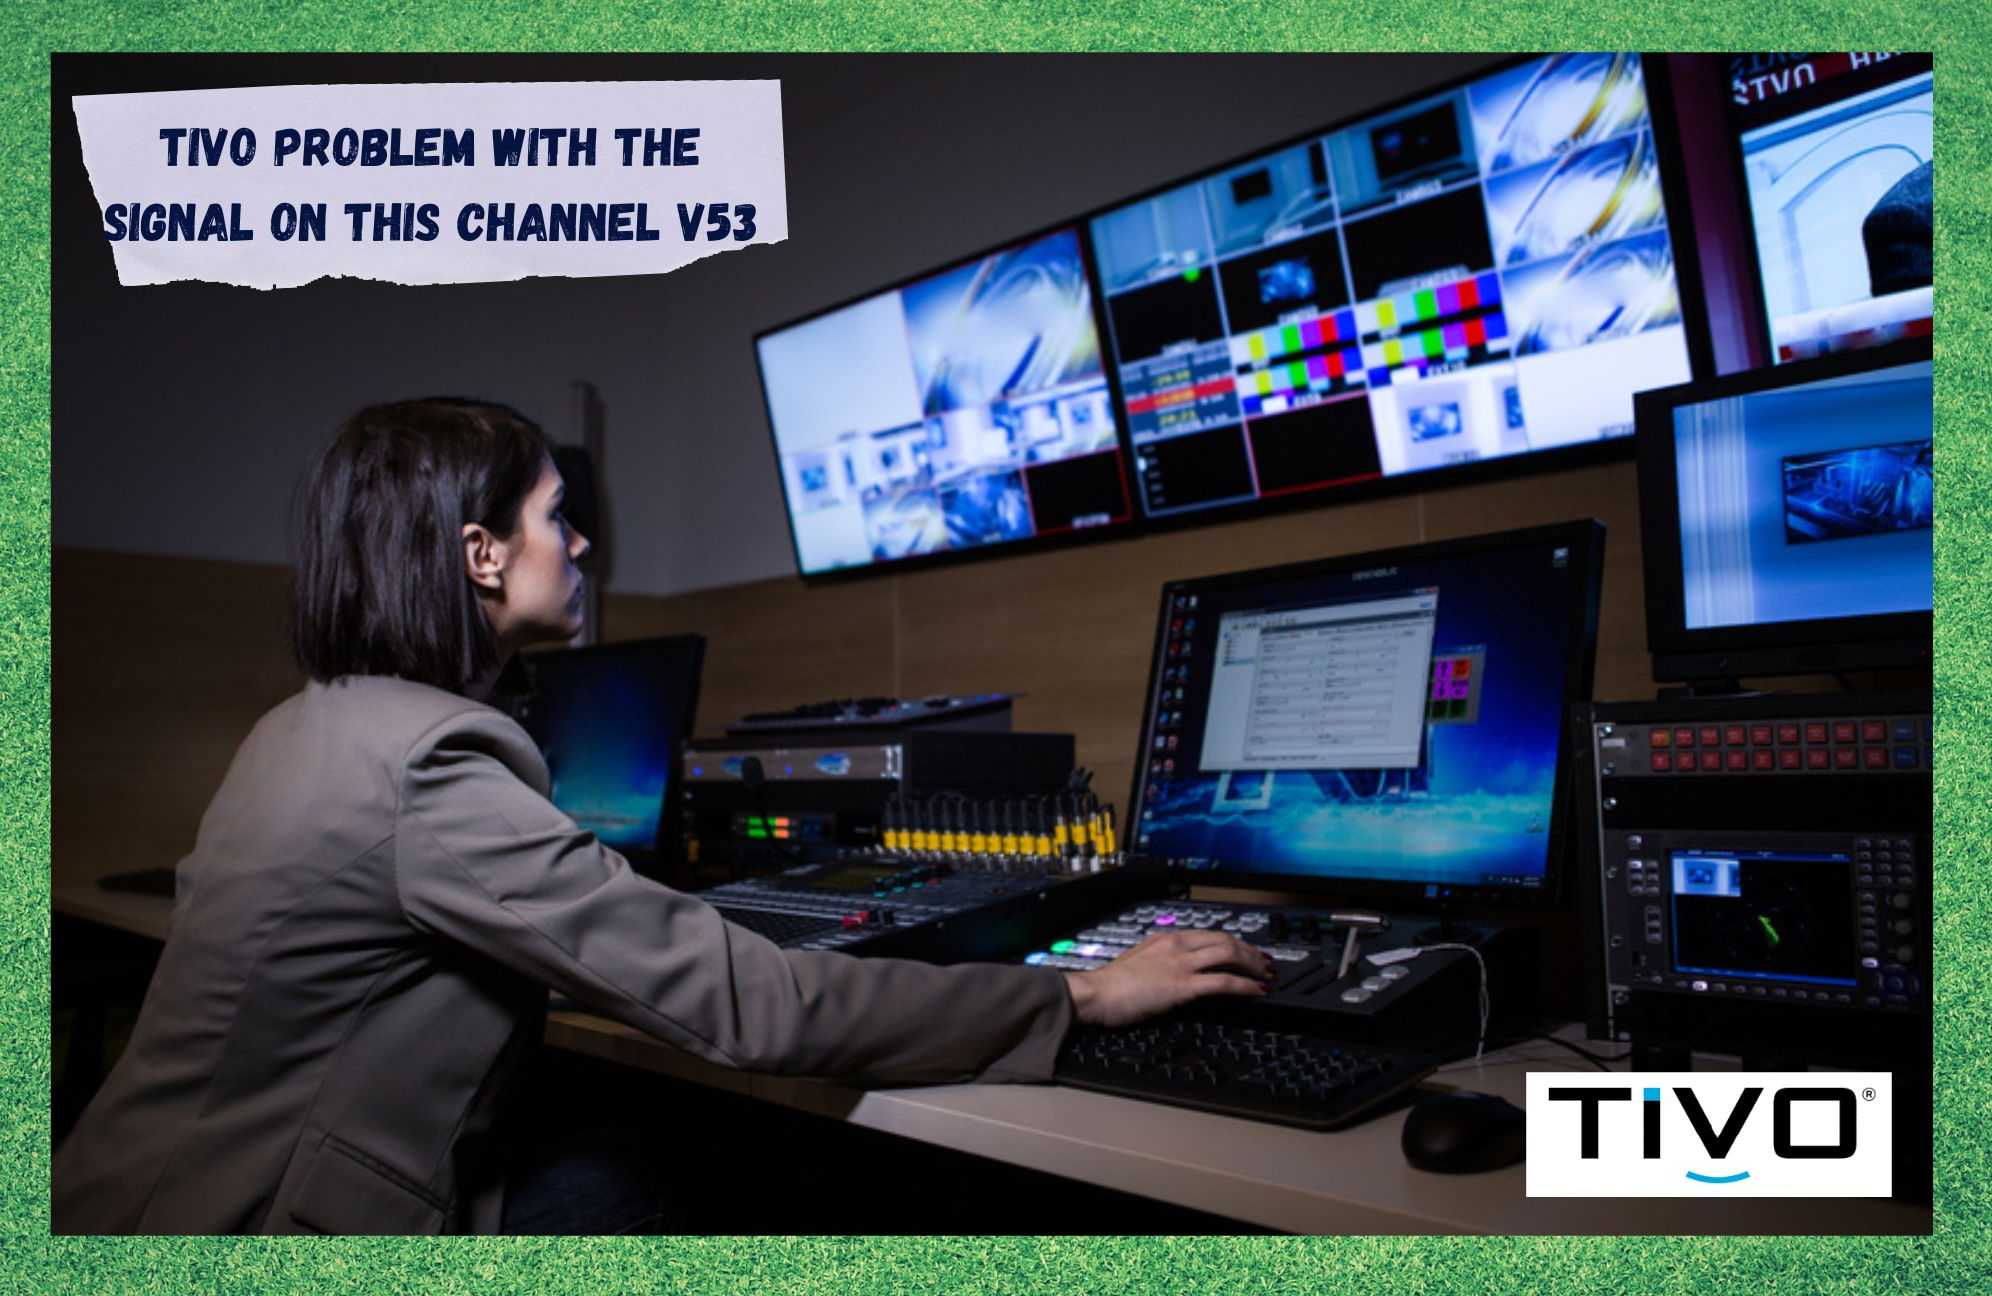 TiVo: اس چینل V53 پر سگنل کے ساتھ مسئلہ (ٹربل شوٹنگ)